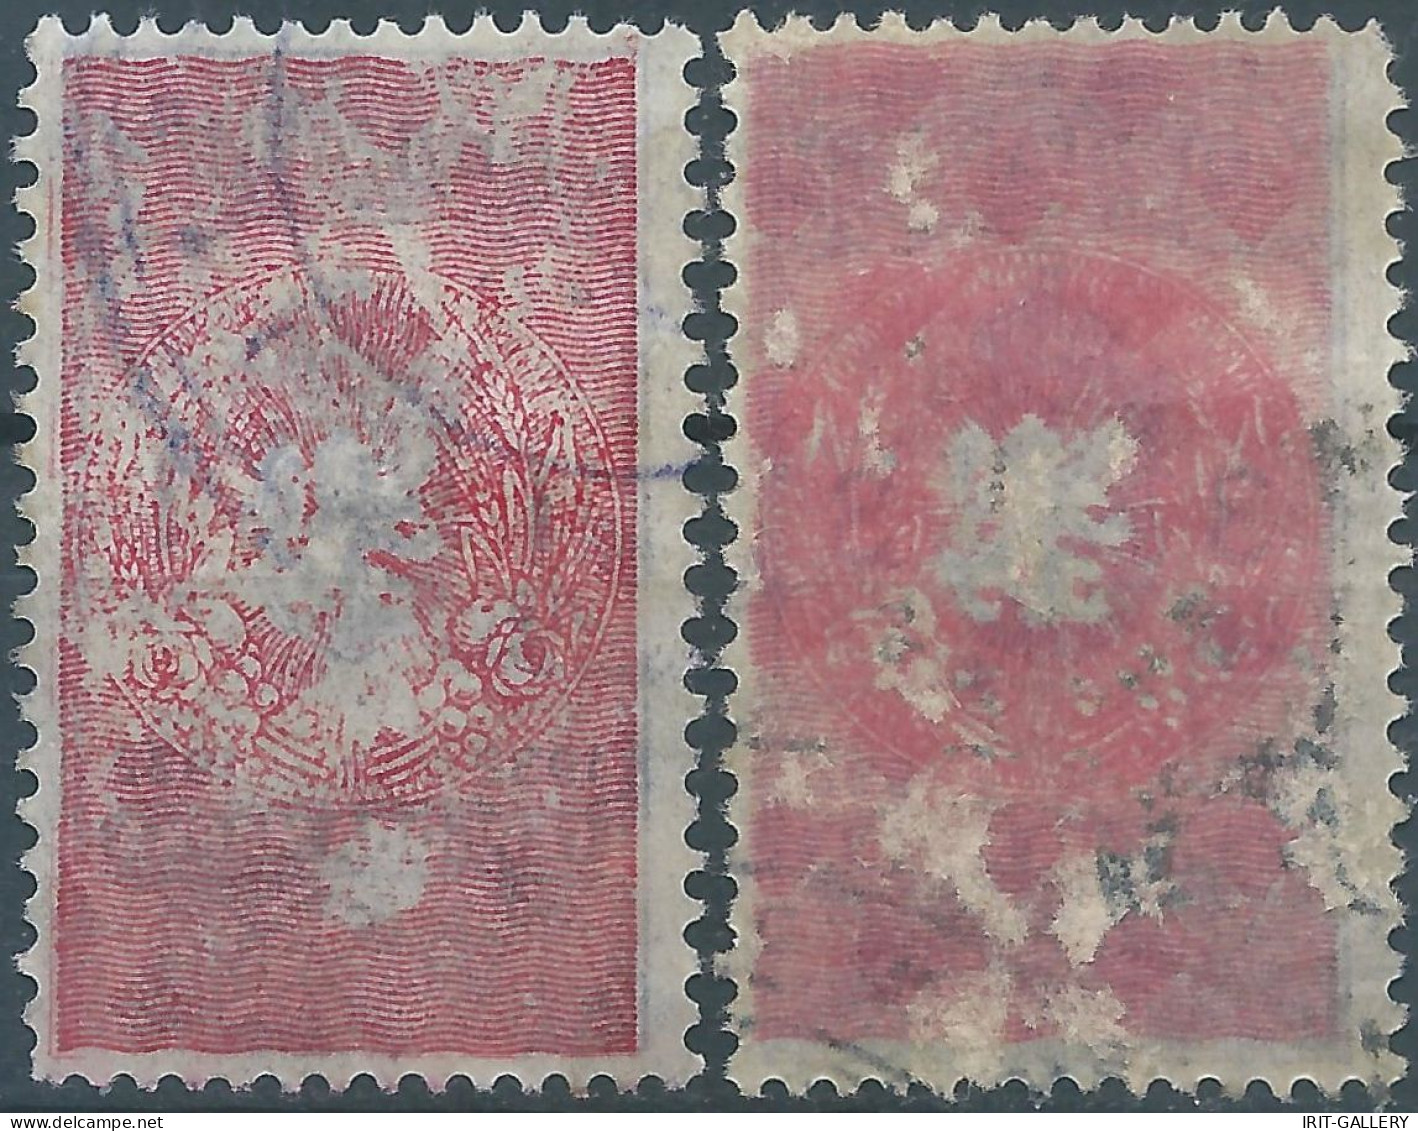 Bulgaria - Bulgarien - Bulgare,1932 Revenue Stamps Tax Fiscal,Used - Francobolli Di Servizio